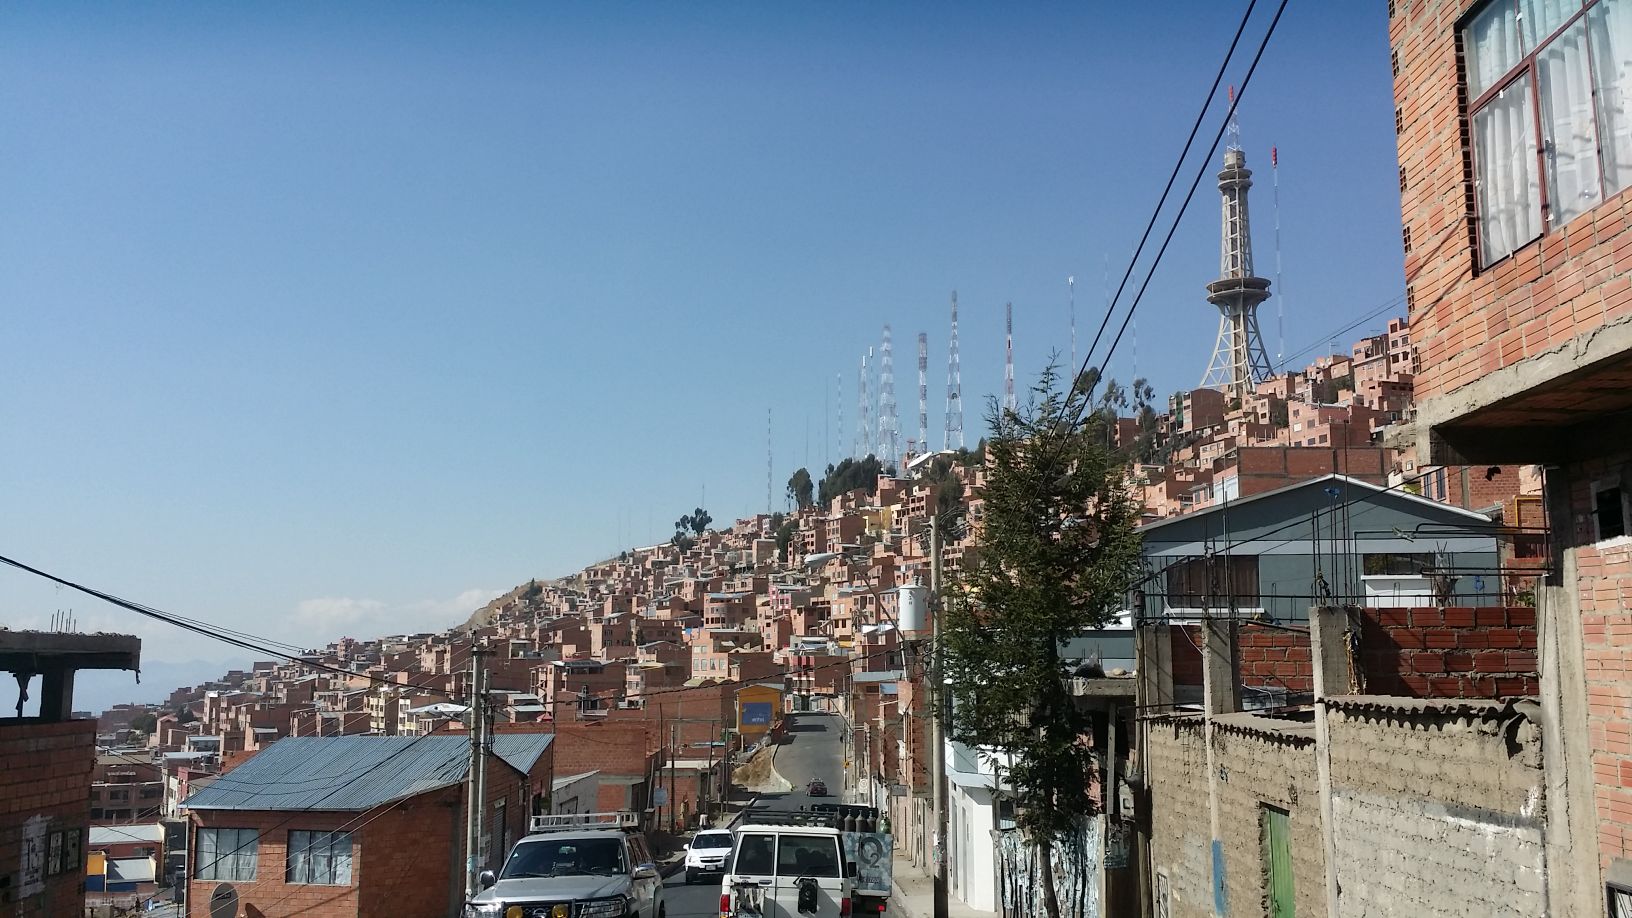 拉巴斯（西班牙语：La Paz），是南美洲国家玻利维亚的行政首都，议会和政府机构所在地（法定首都和最